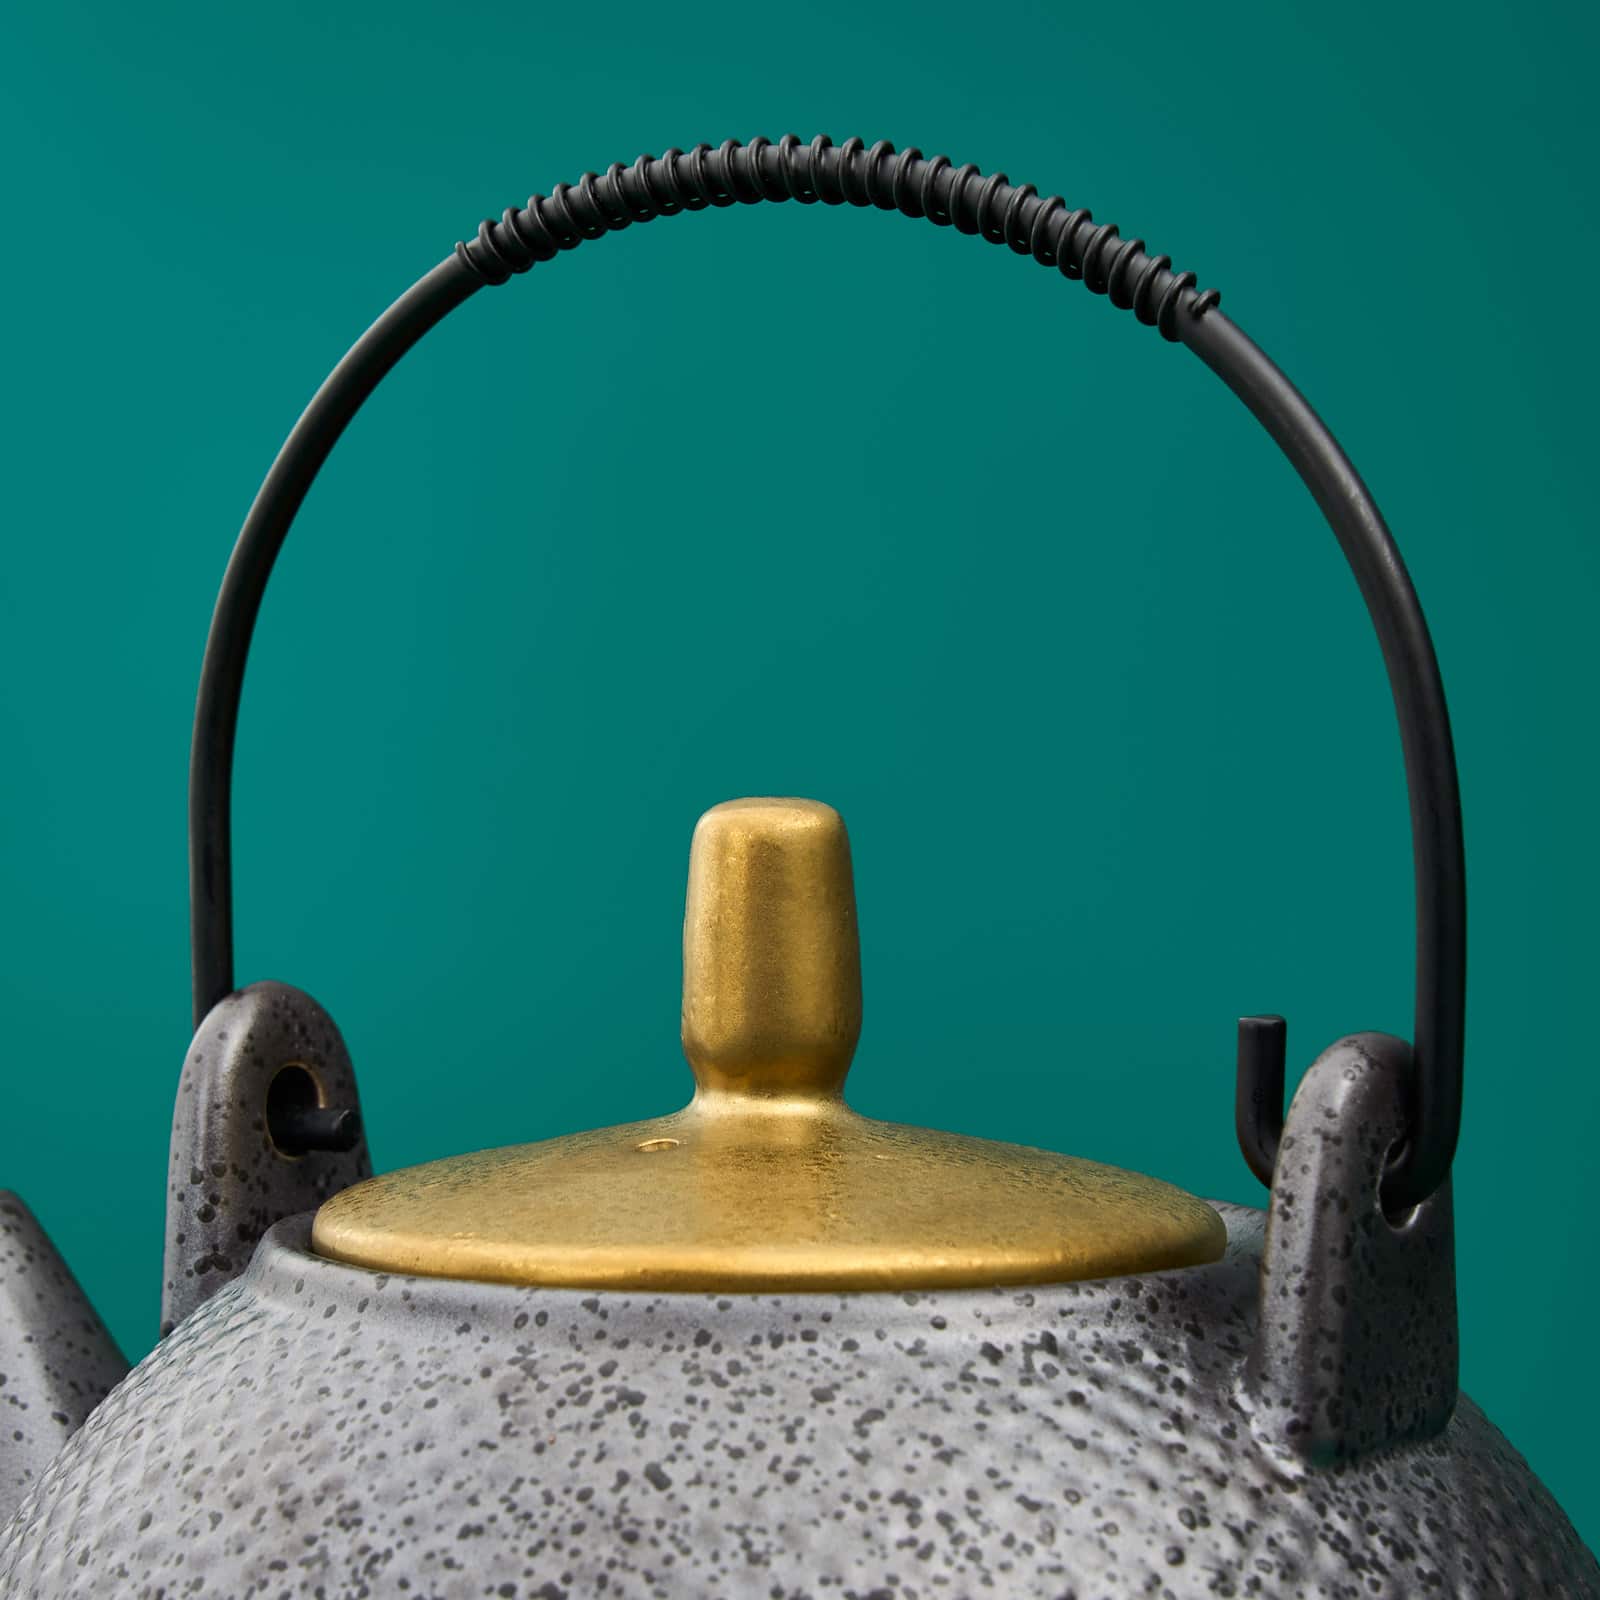 Teekanne Ceylon, schwarz/gold, Porzellan/Metall, 18,5x13x13,5 cm, spülmaschinen- und mikrowellengeeignet